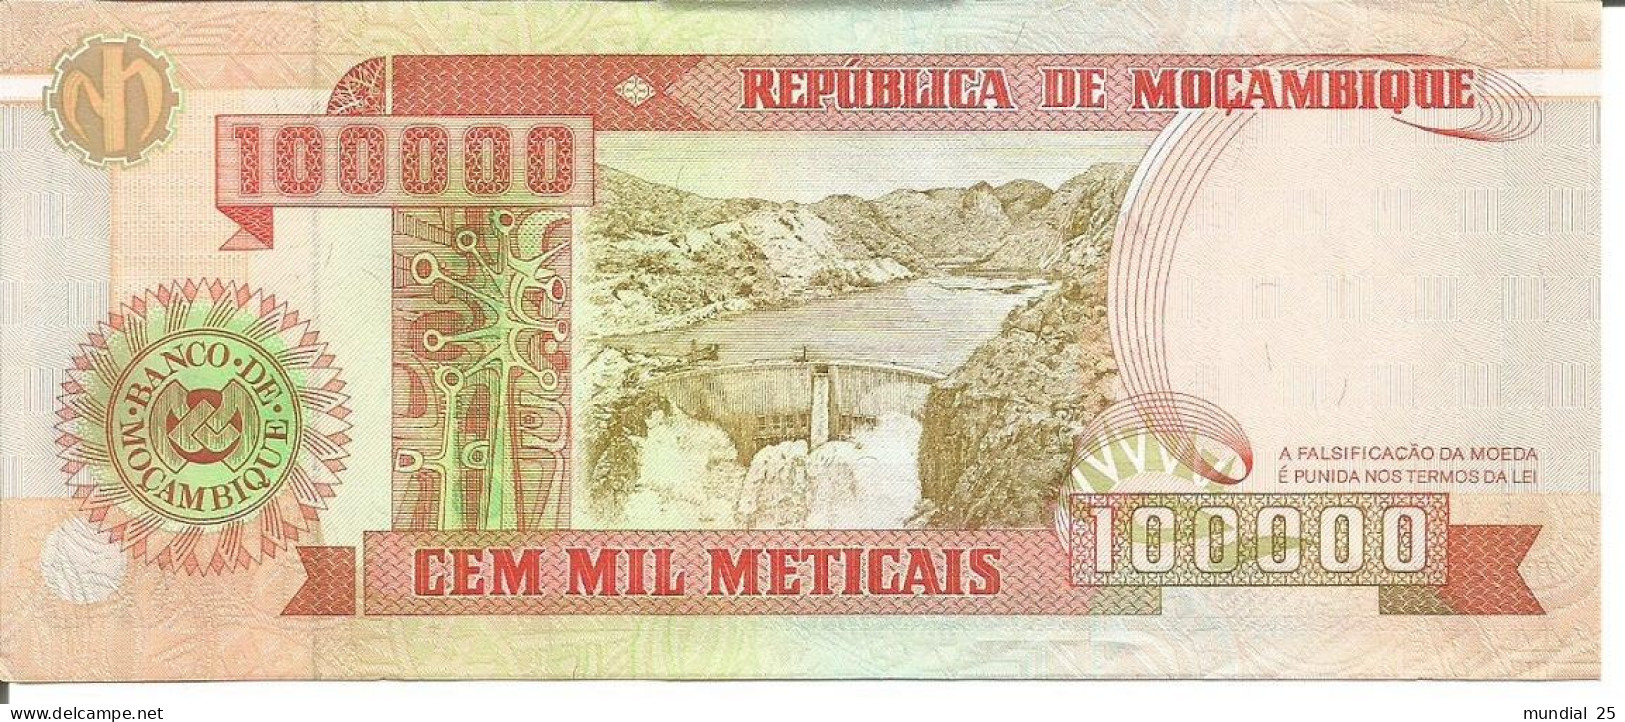 2 MOZAMBIQUE NOTES 100.000 METICAIS 16/06/1993 (1994) - Mozambique